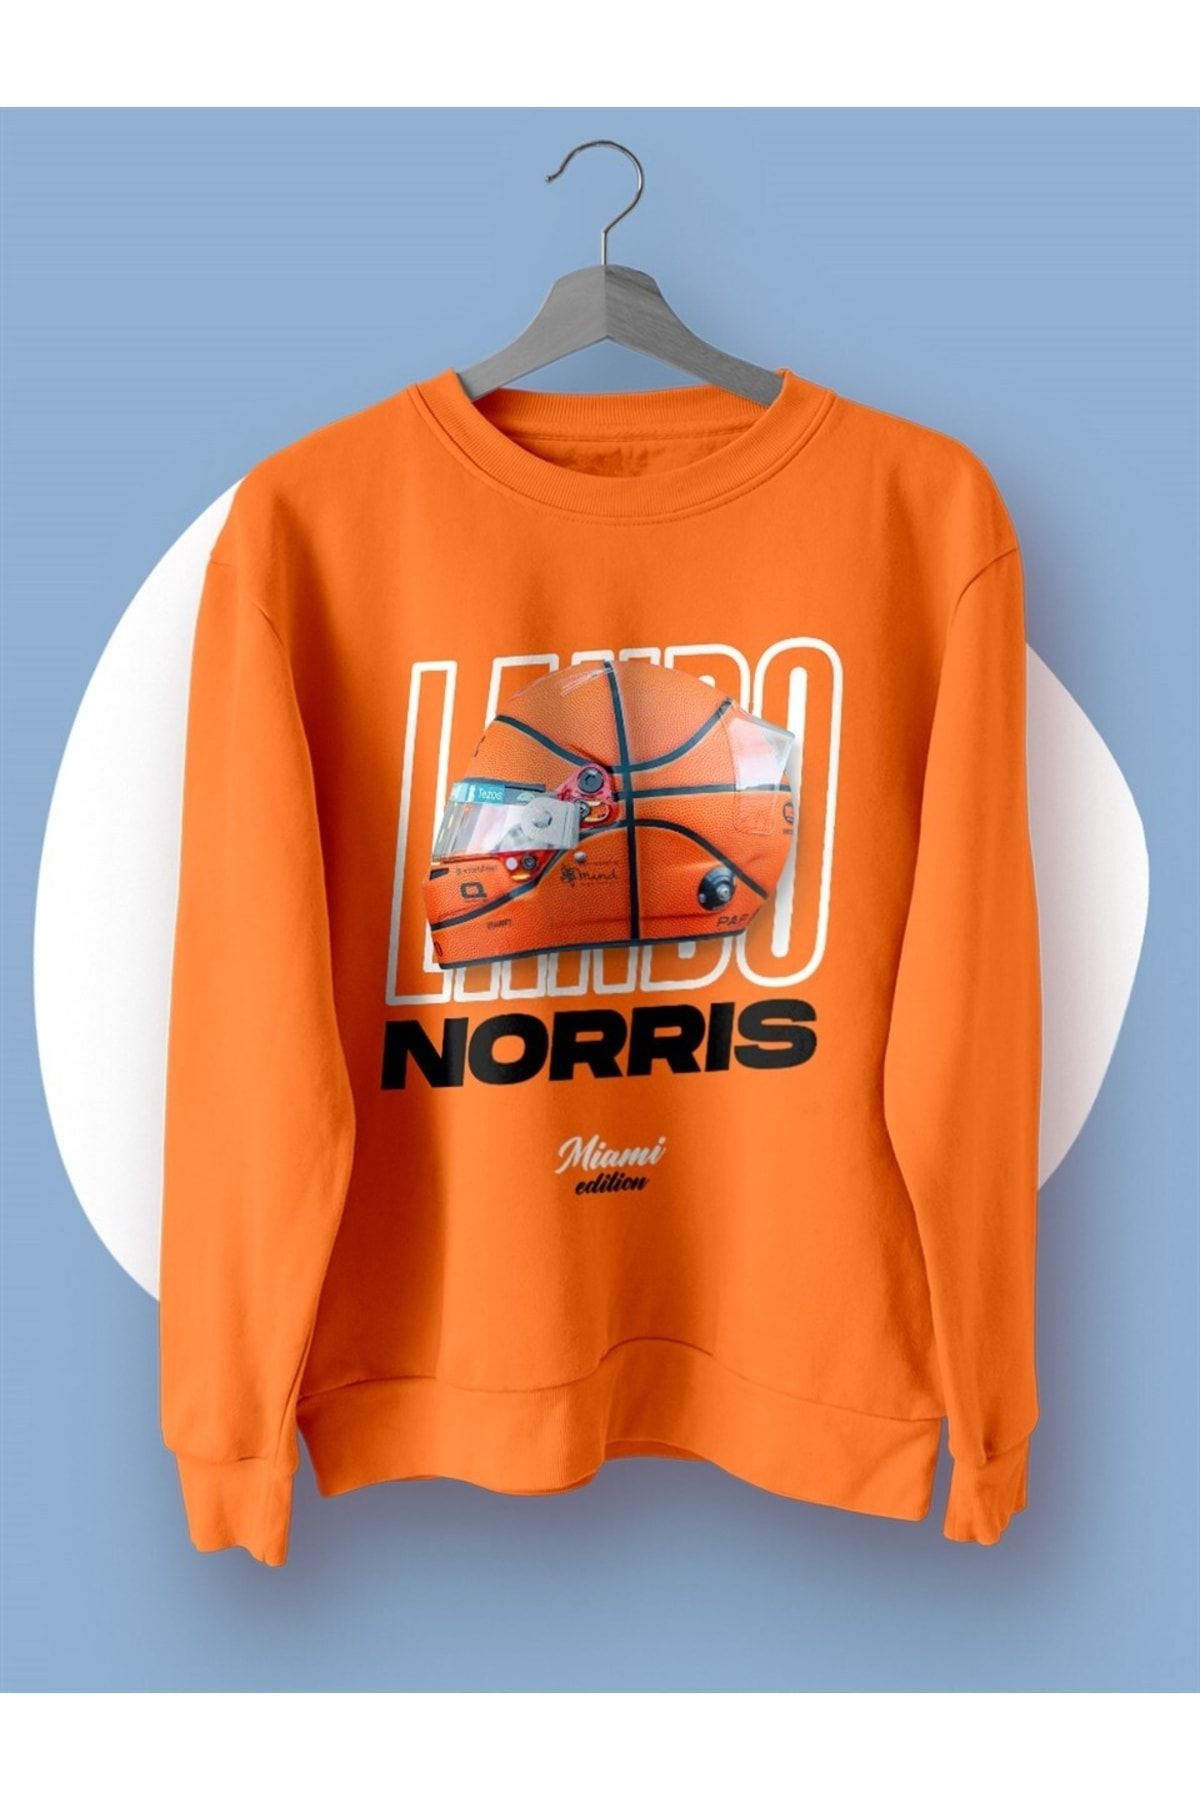 FANBOX SHOP Lando Norris Miami Edition Turuncu Sweatshirt Kazak